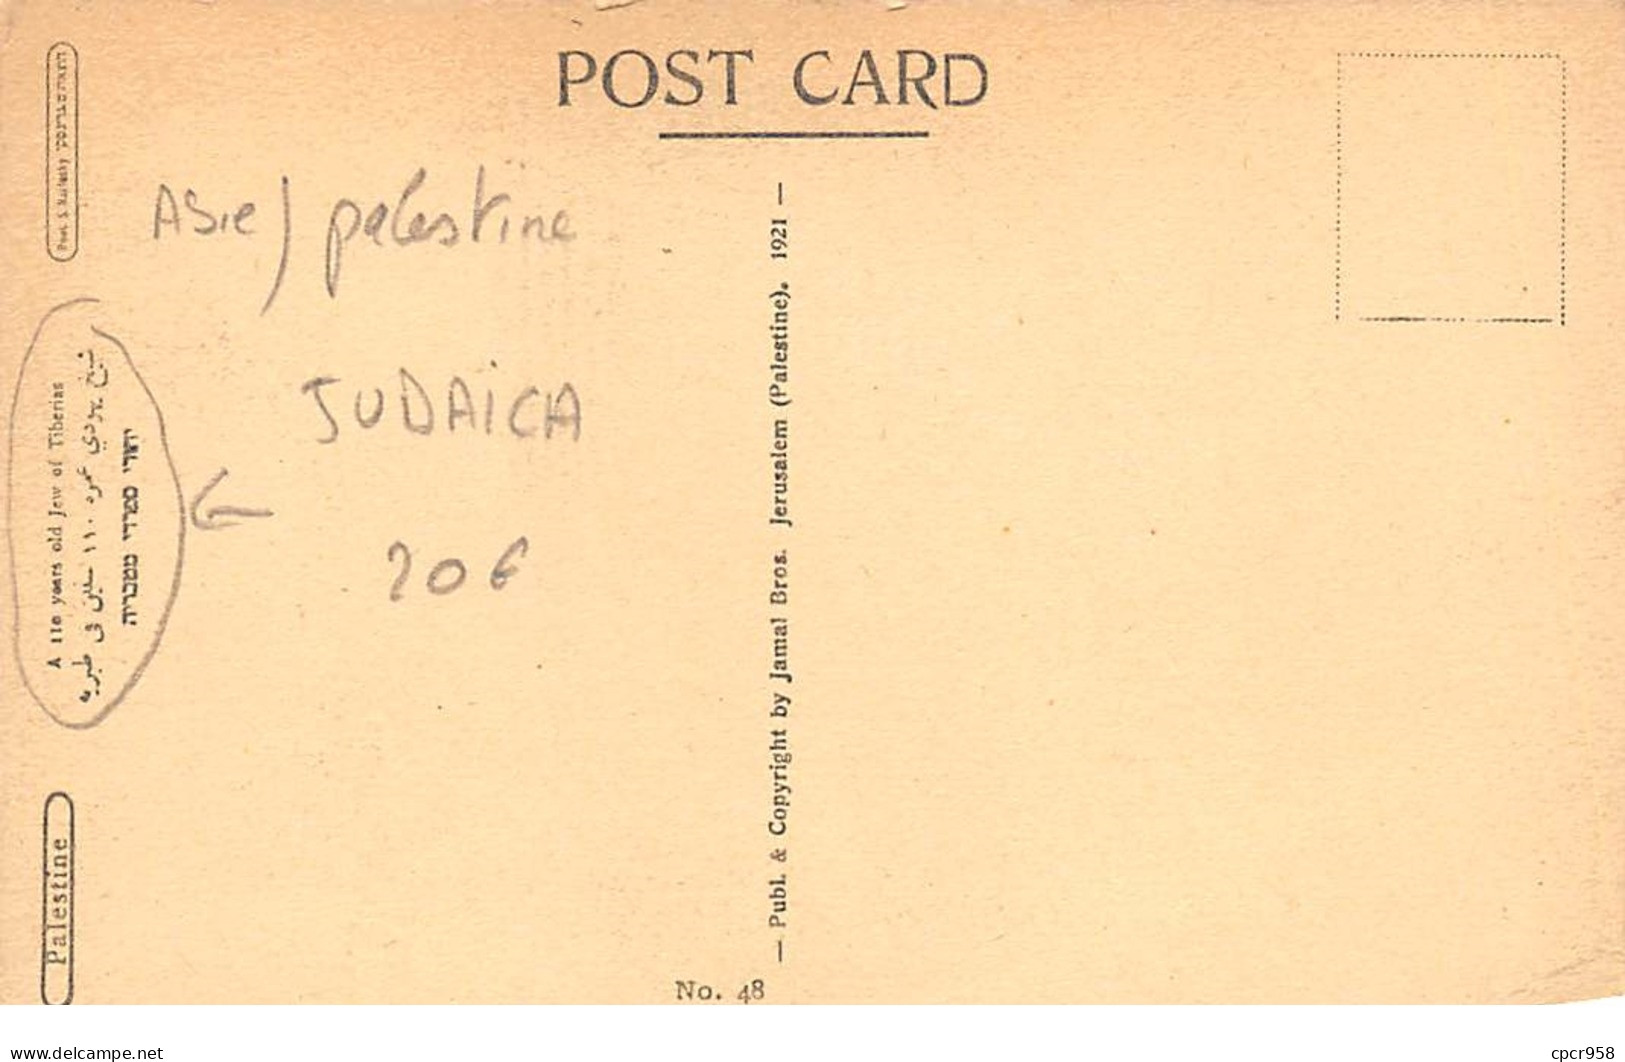 Asie - N°64820 - Palestine - Judaica - A .. Years Old Jew Of Tiberias - Palestine